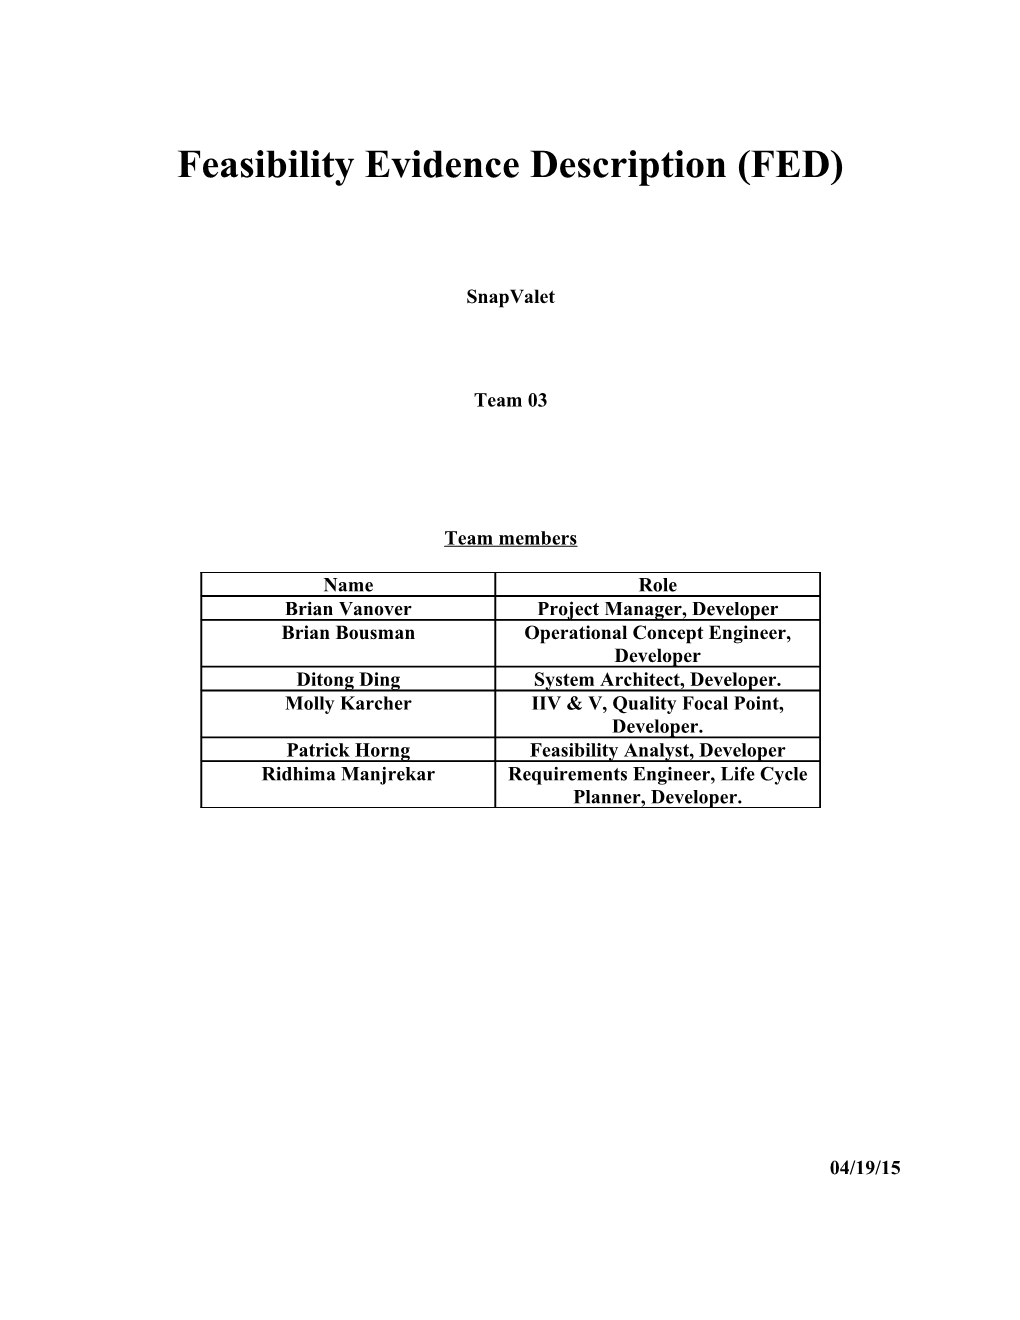 Feasibility Rationale Description (FRD) s3